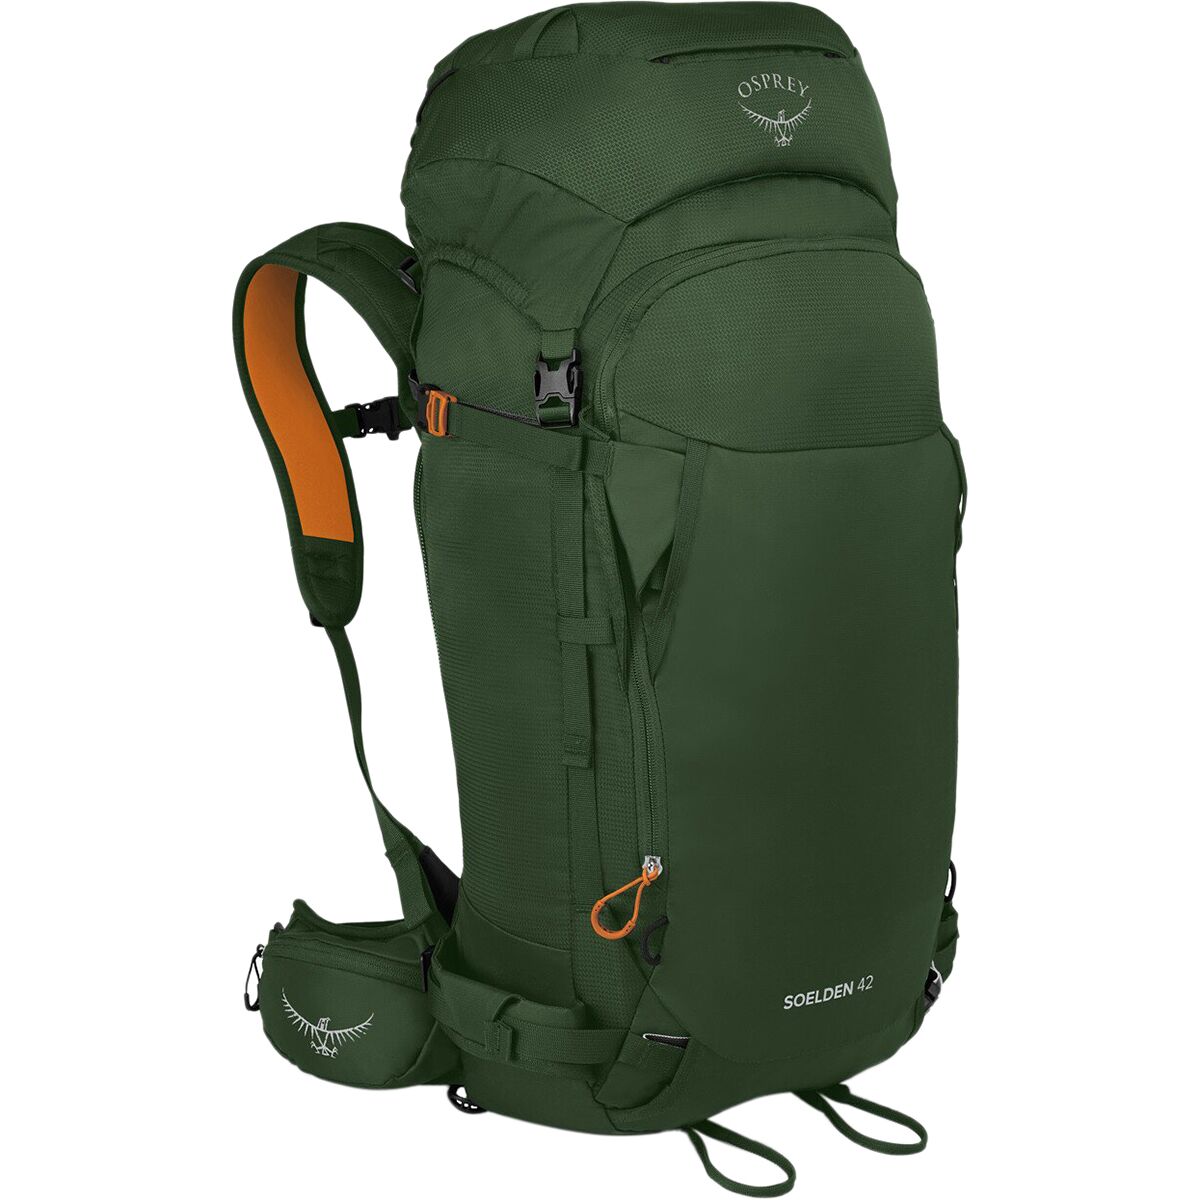 Osprey Packs Soelden 42L Backpack